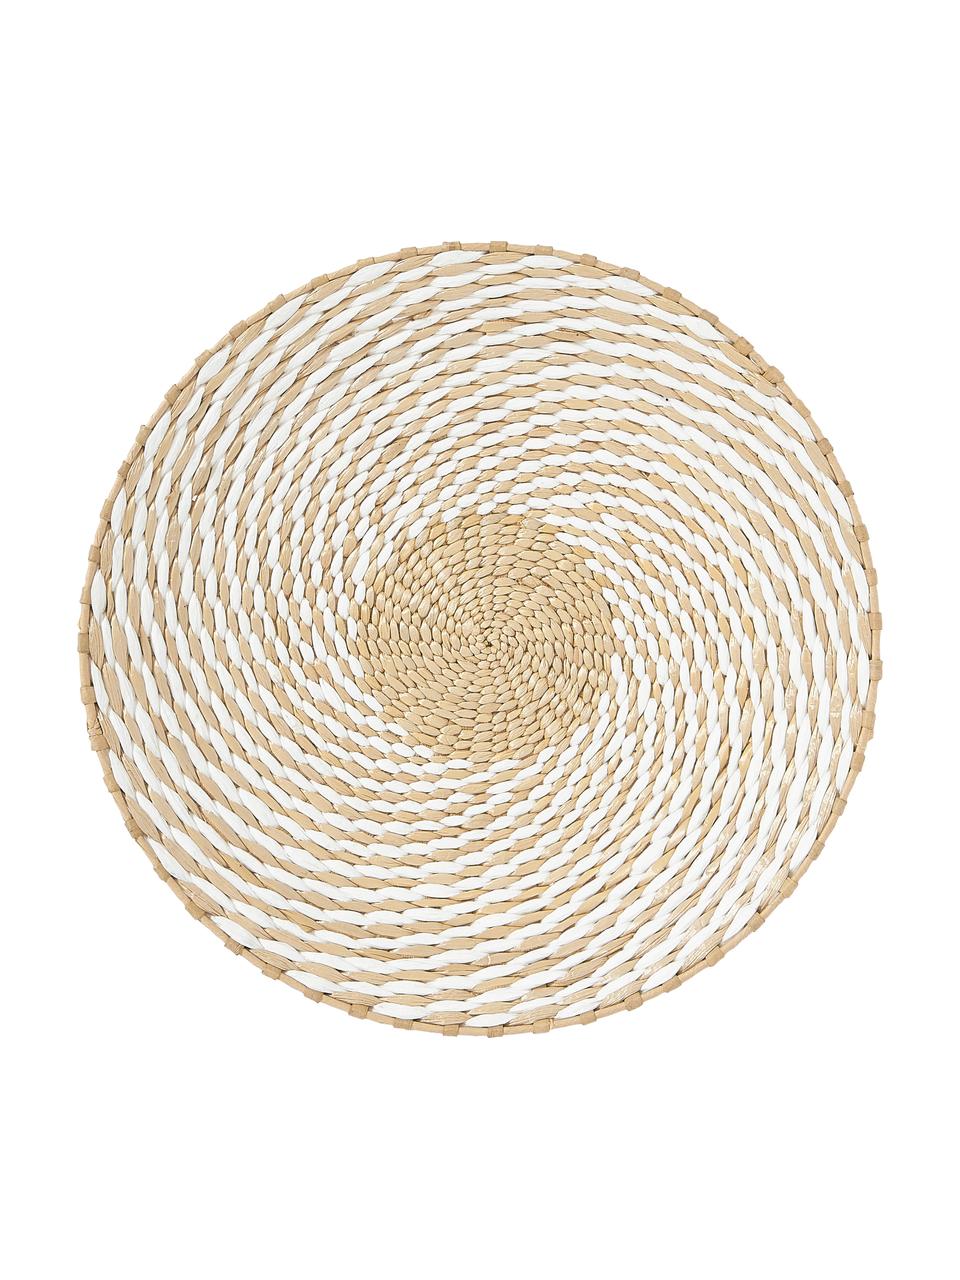 Wandobjectenset Tilda, 3-delig, Metaal, natuurlijke vezels, papier, Wit, beige, Set met verschillende formaten